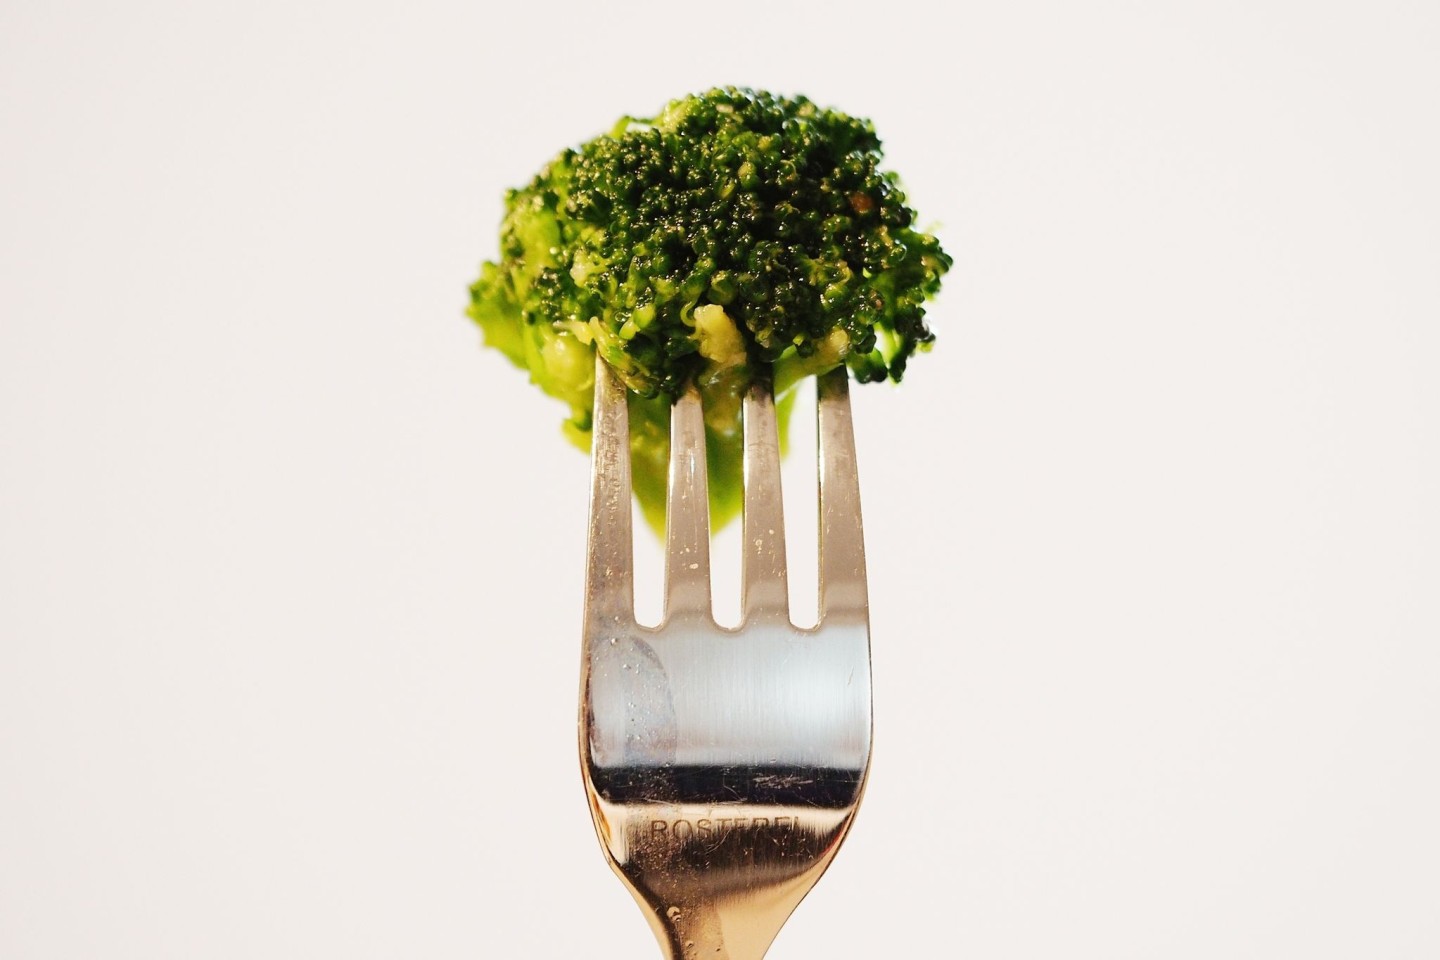 Warum hassen Kinder Brokkoli? Eine neue Studie gibt Hinweise.